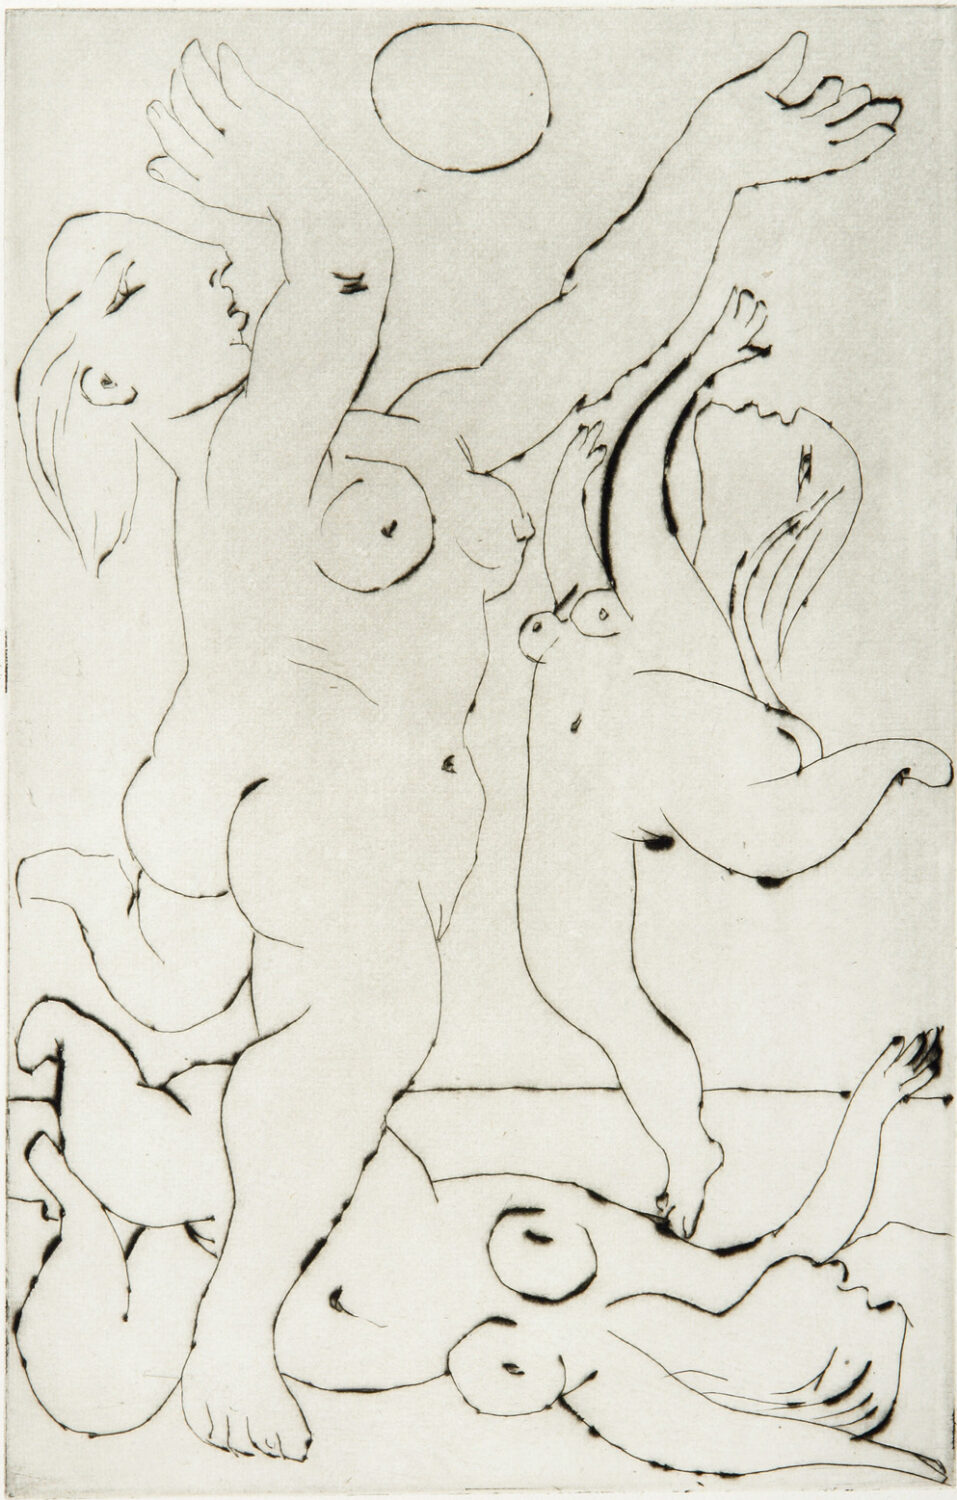 thumbnail of Drypoint by Pablo Picasso titled Jeu Sur La Plage.